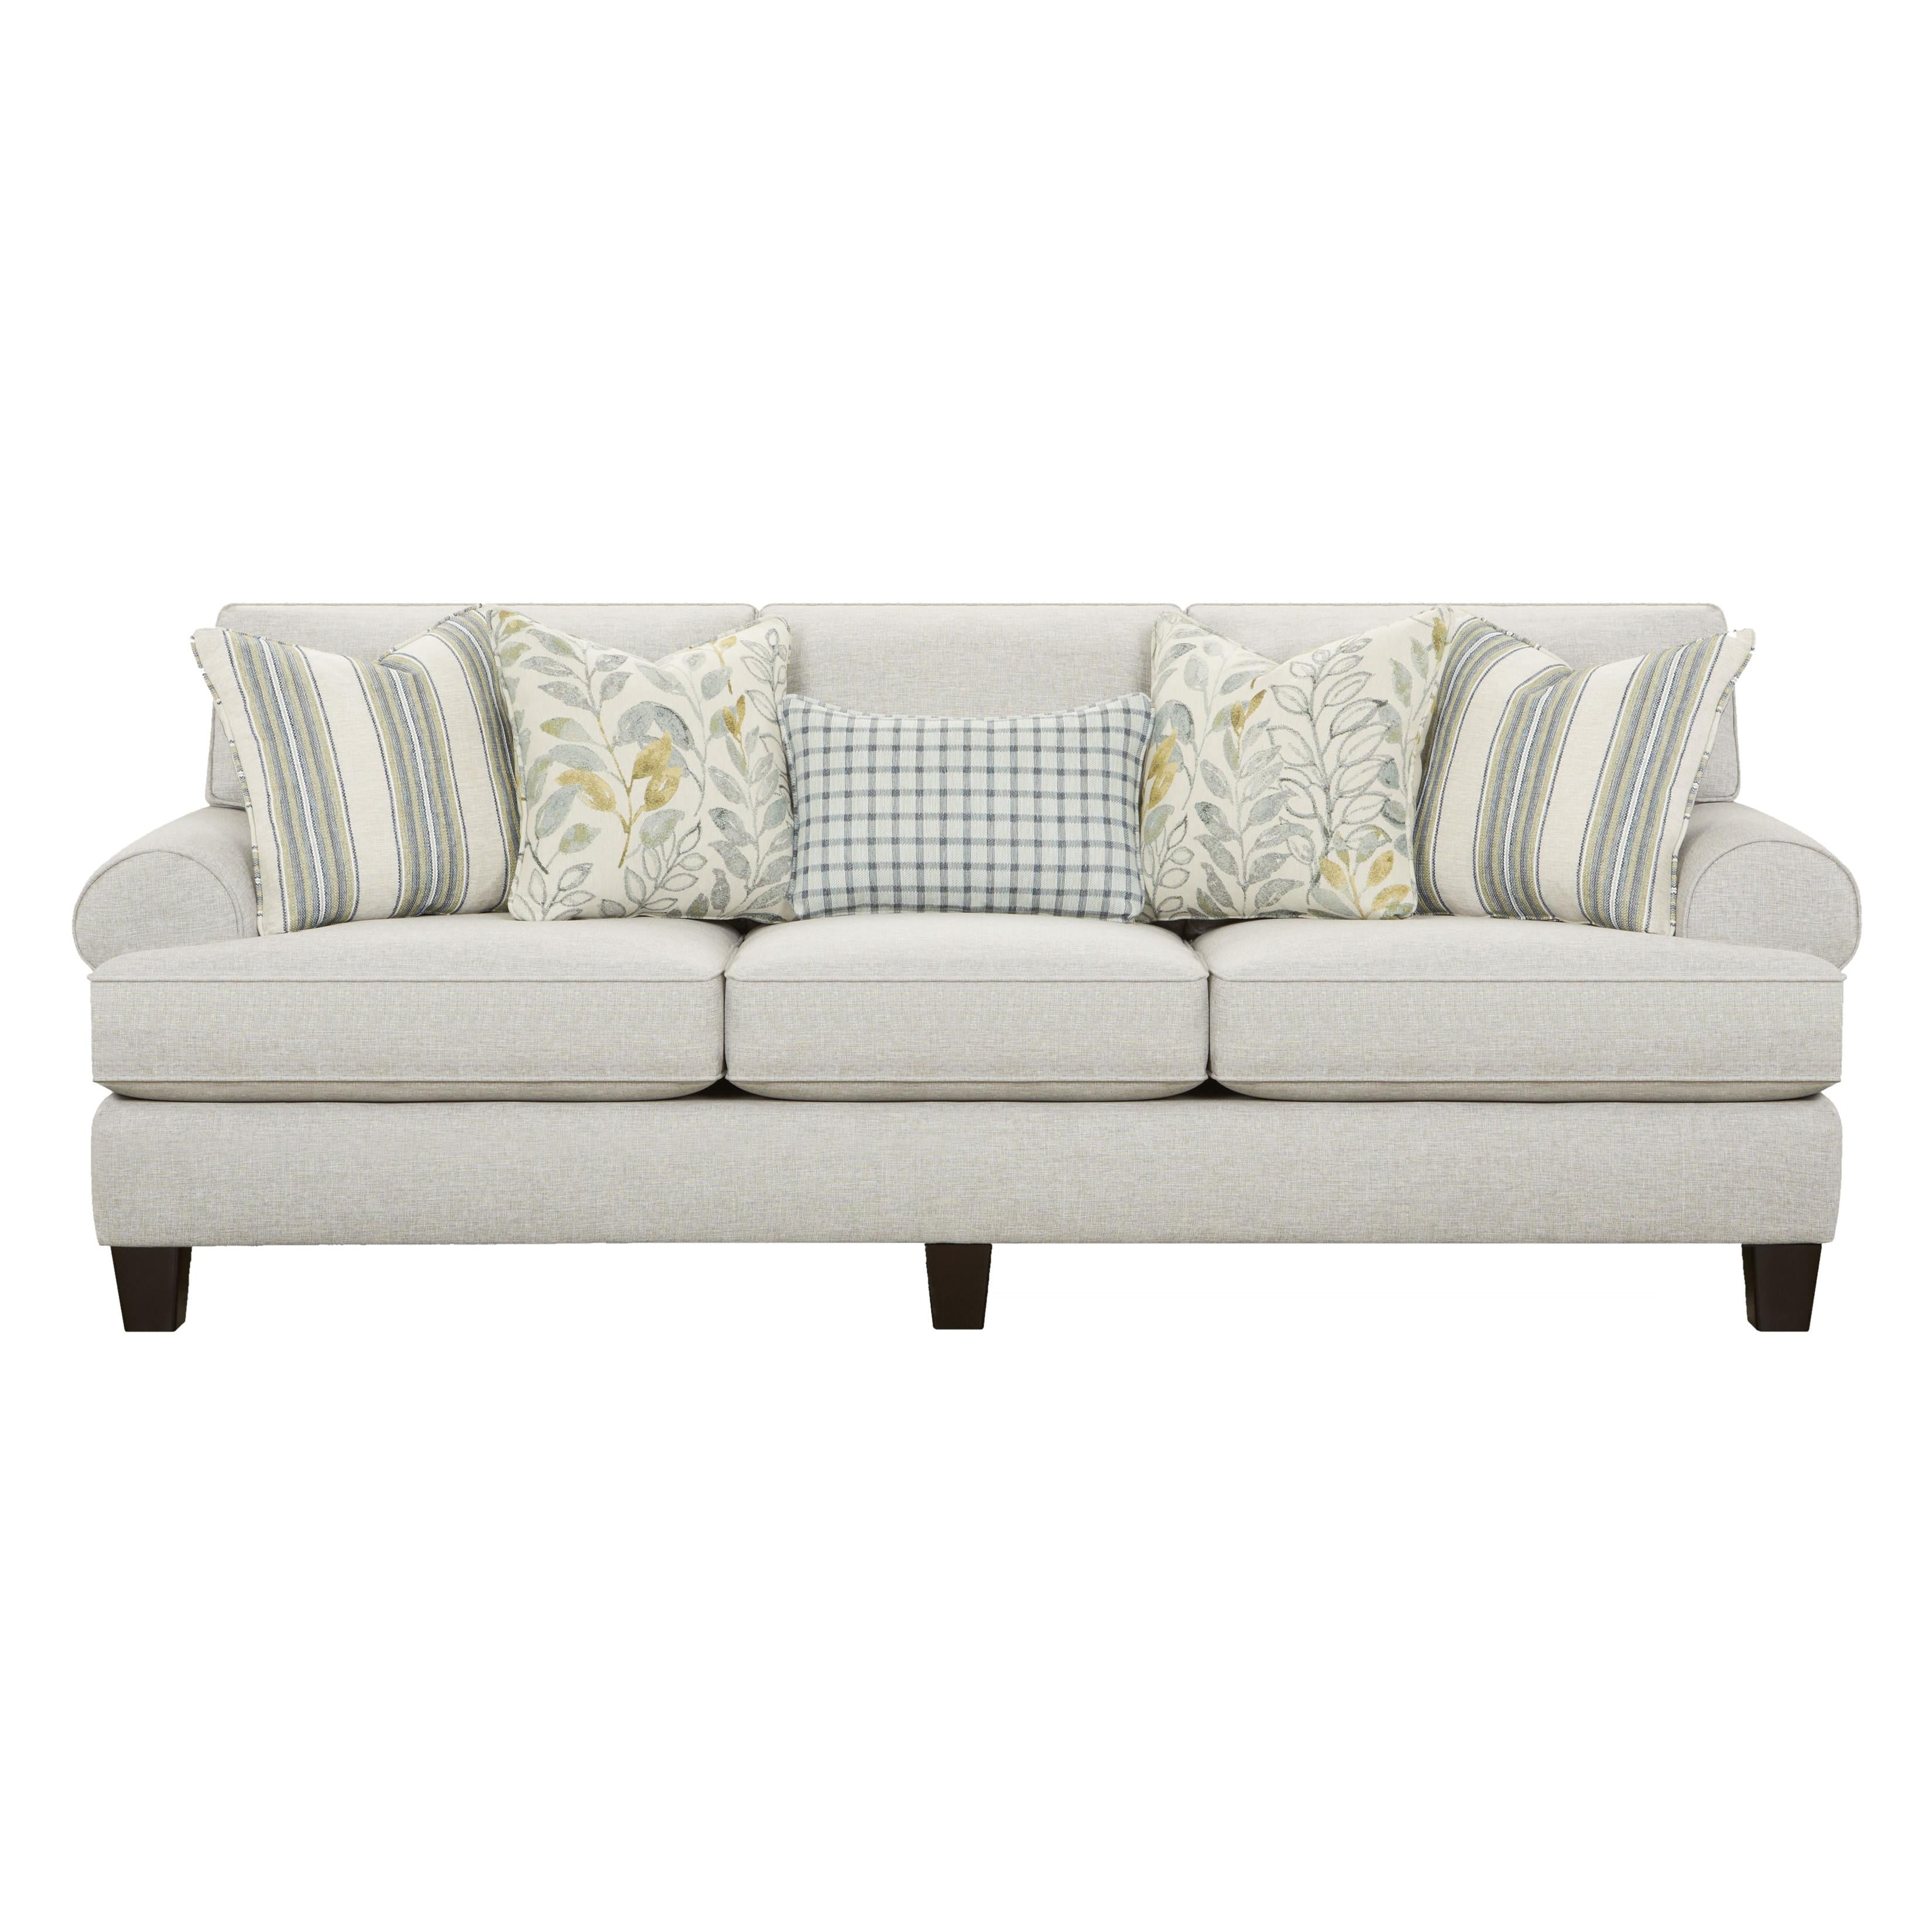 Fusion Furniture Stationary Fabric Sofa